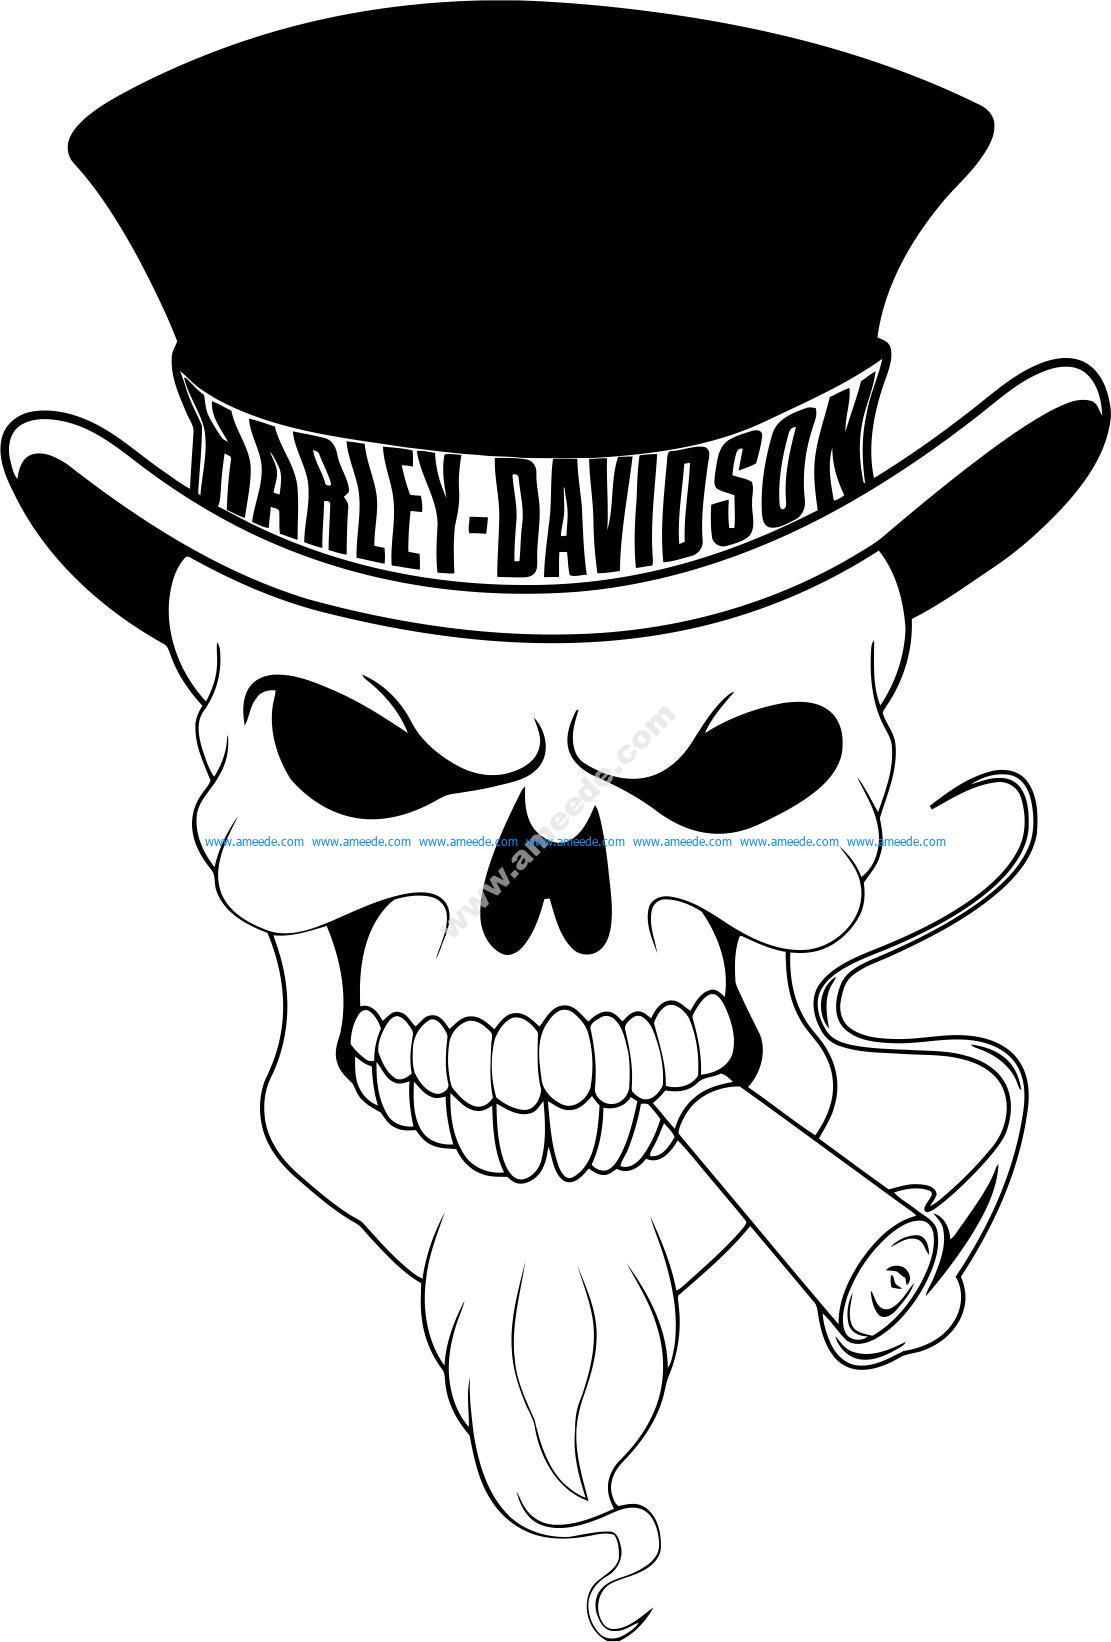 harley-davidson-skull-logo-vector-motorcylce